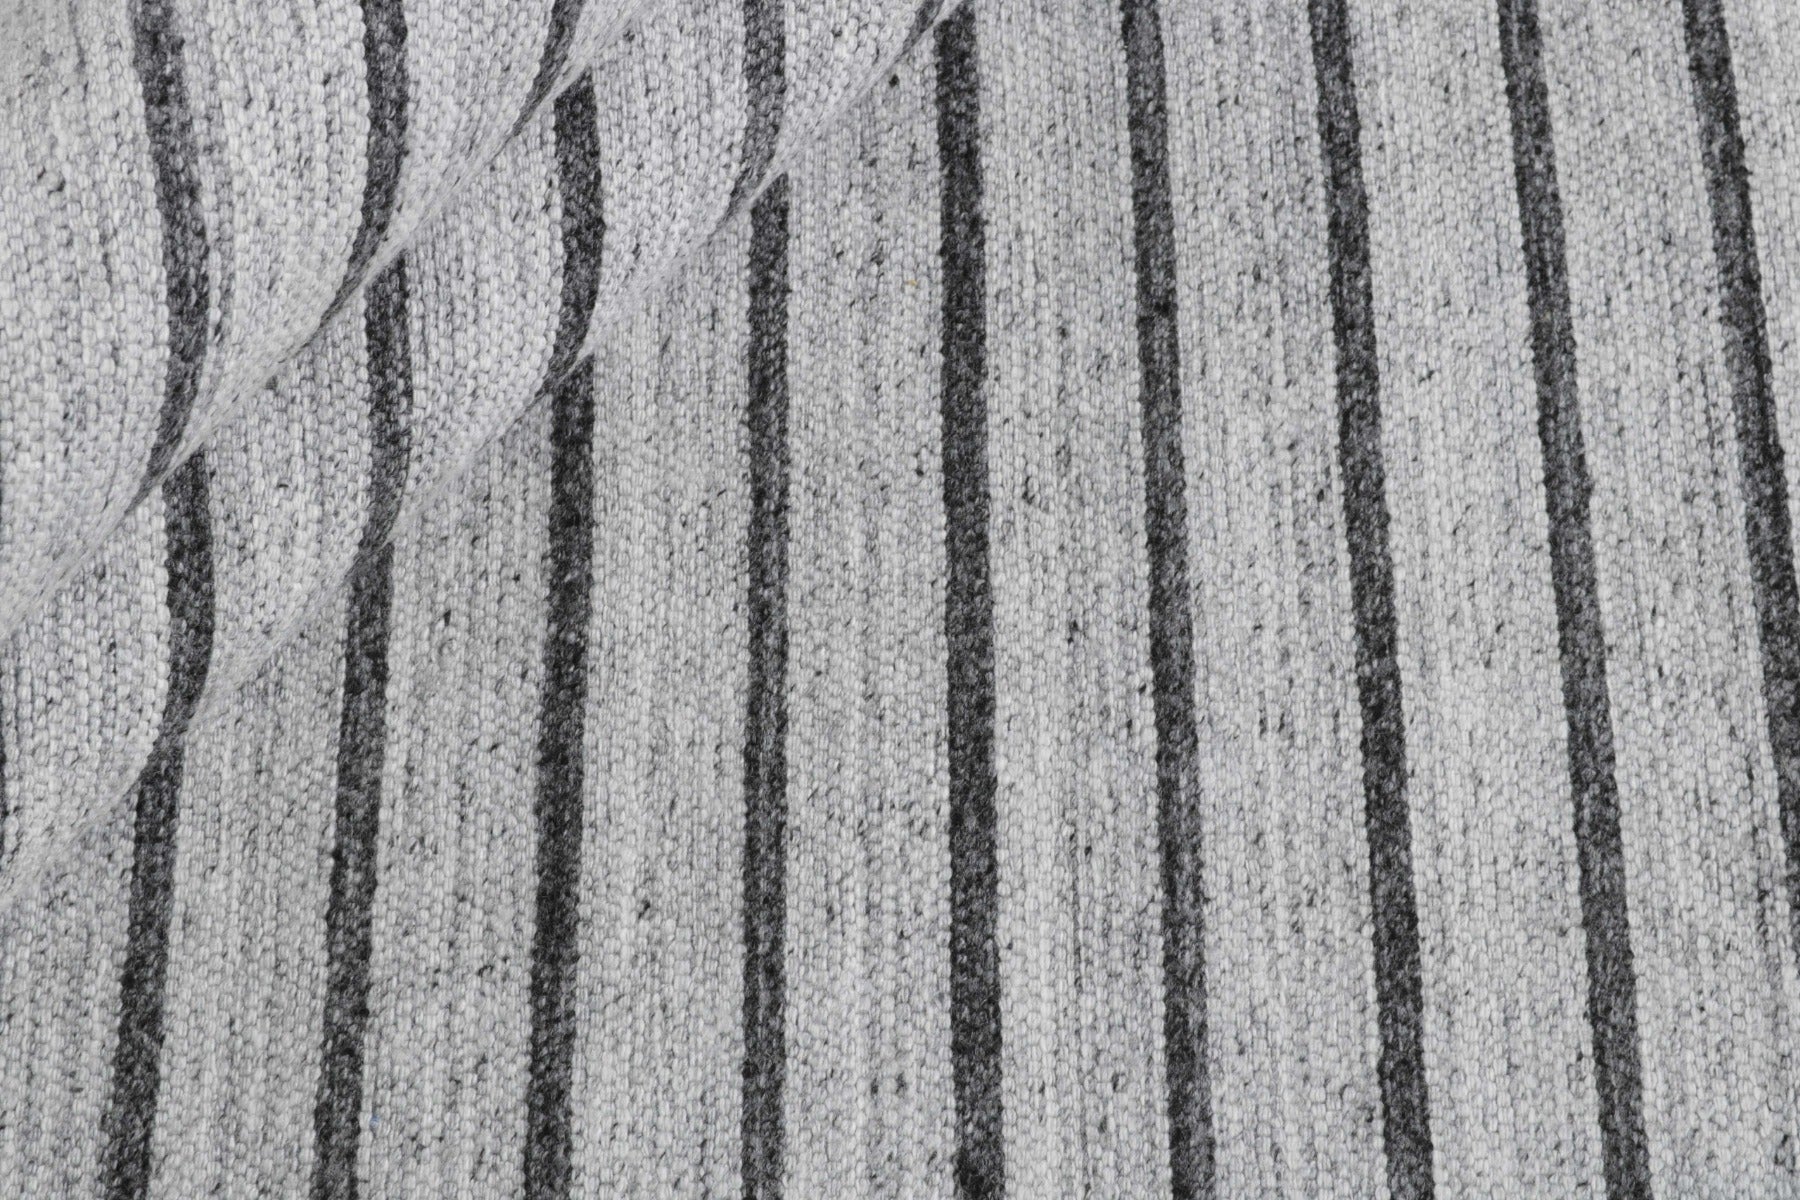 authentic oriental kelim flatweave striped rug in grey and black